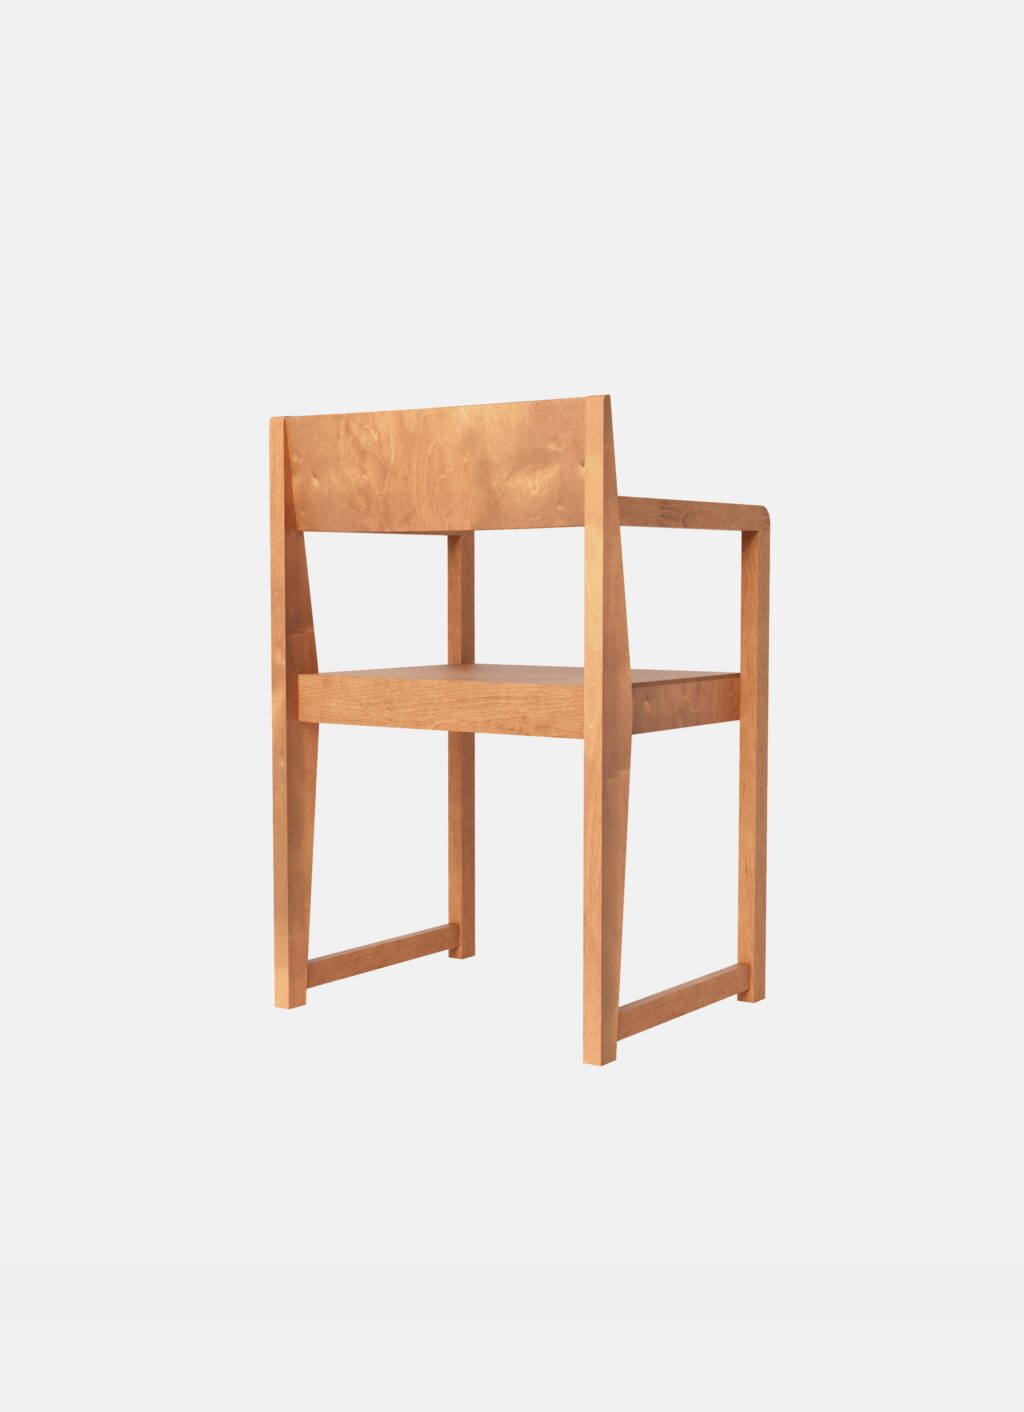 Frama - Armrest Chair 01 - Warm Brown Birch